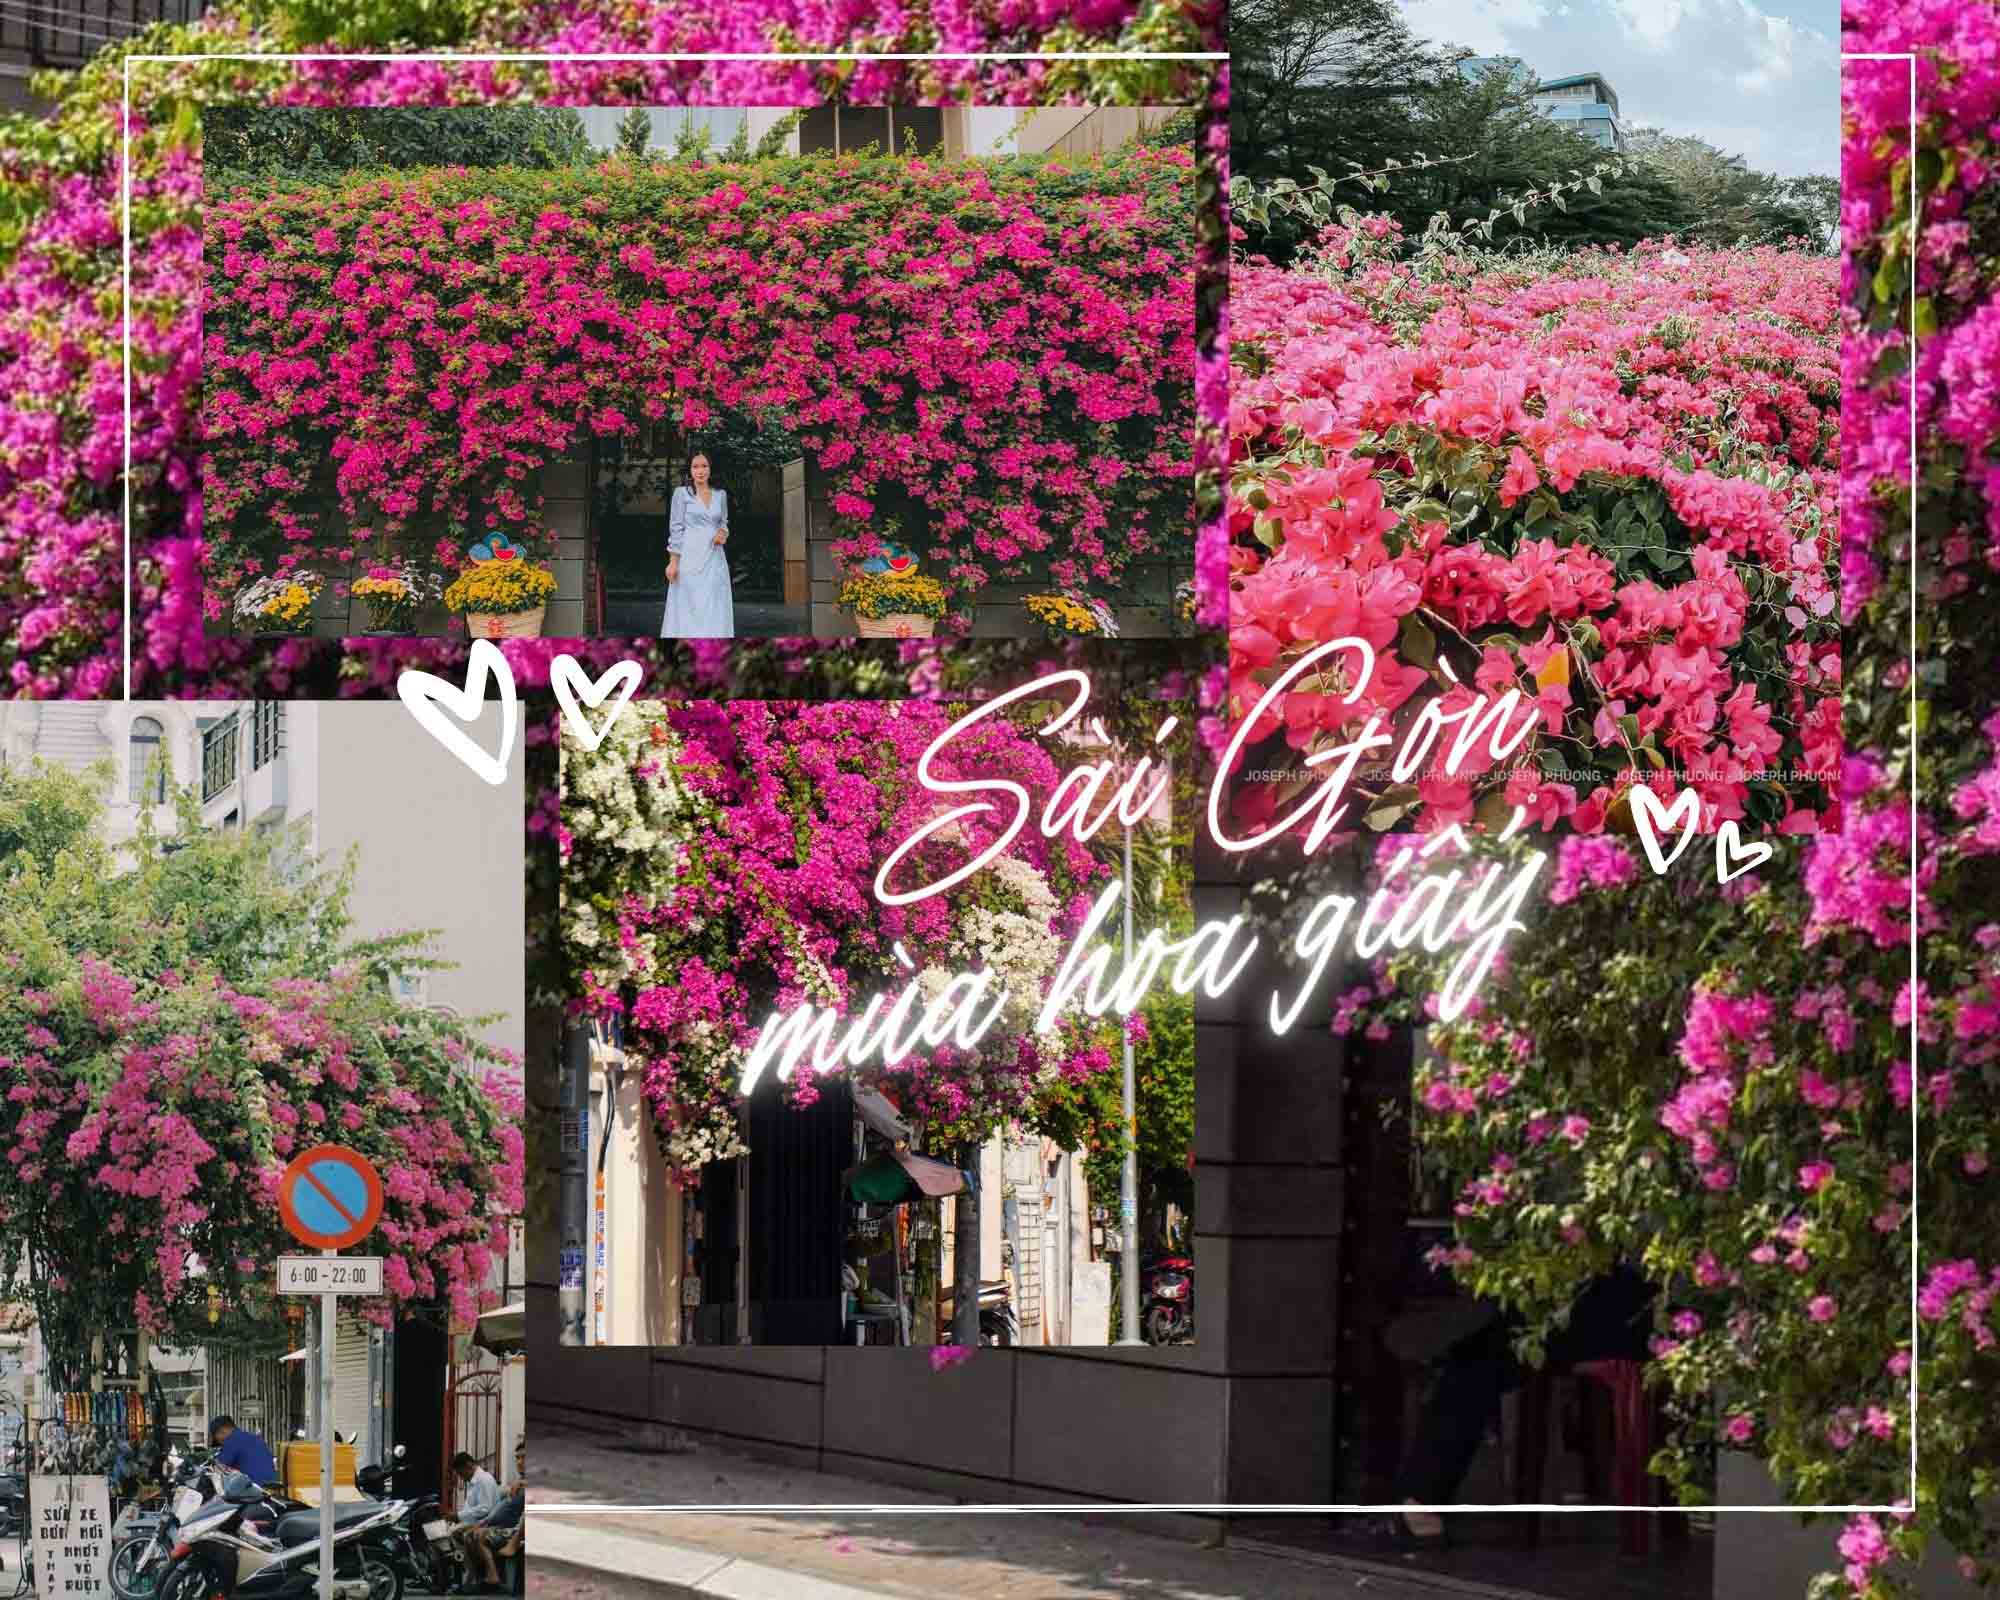 Những góc đường phủ kín hoa giấy, thu hút nhiều người chụp ảnh ở Sài Gòn - Ảnh 1.